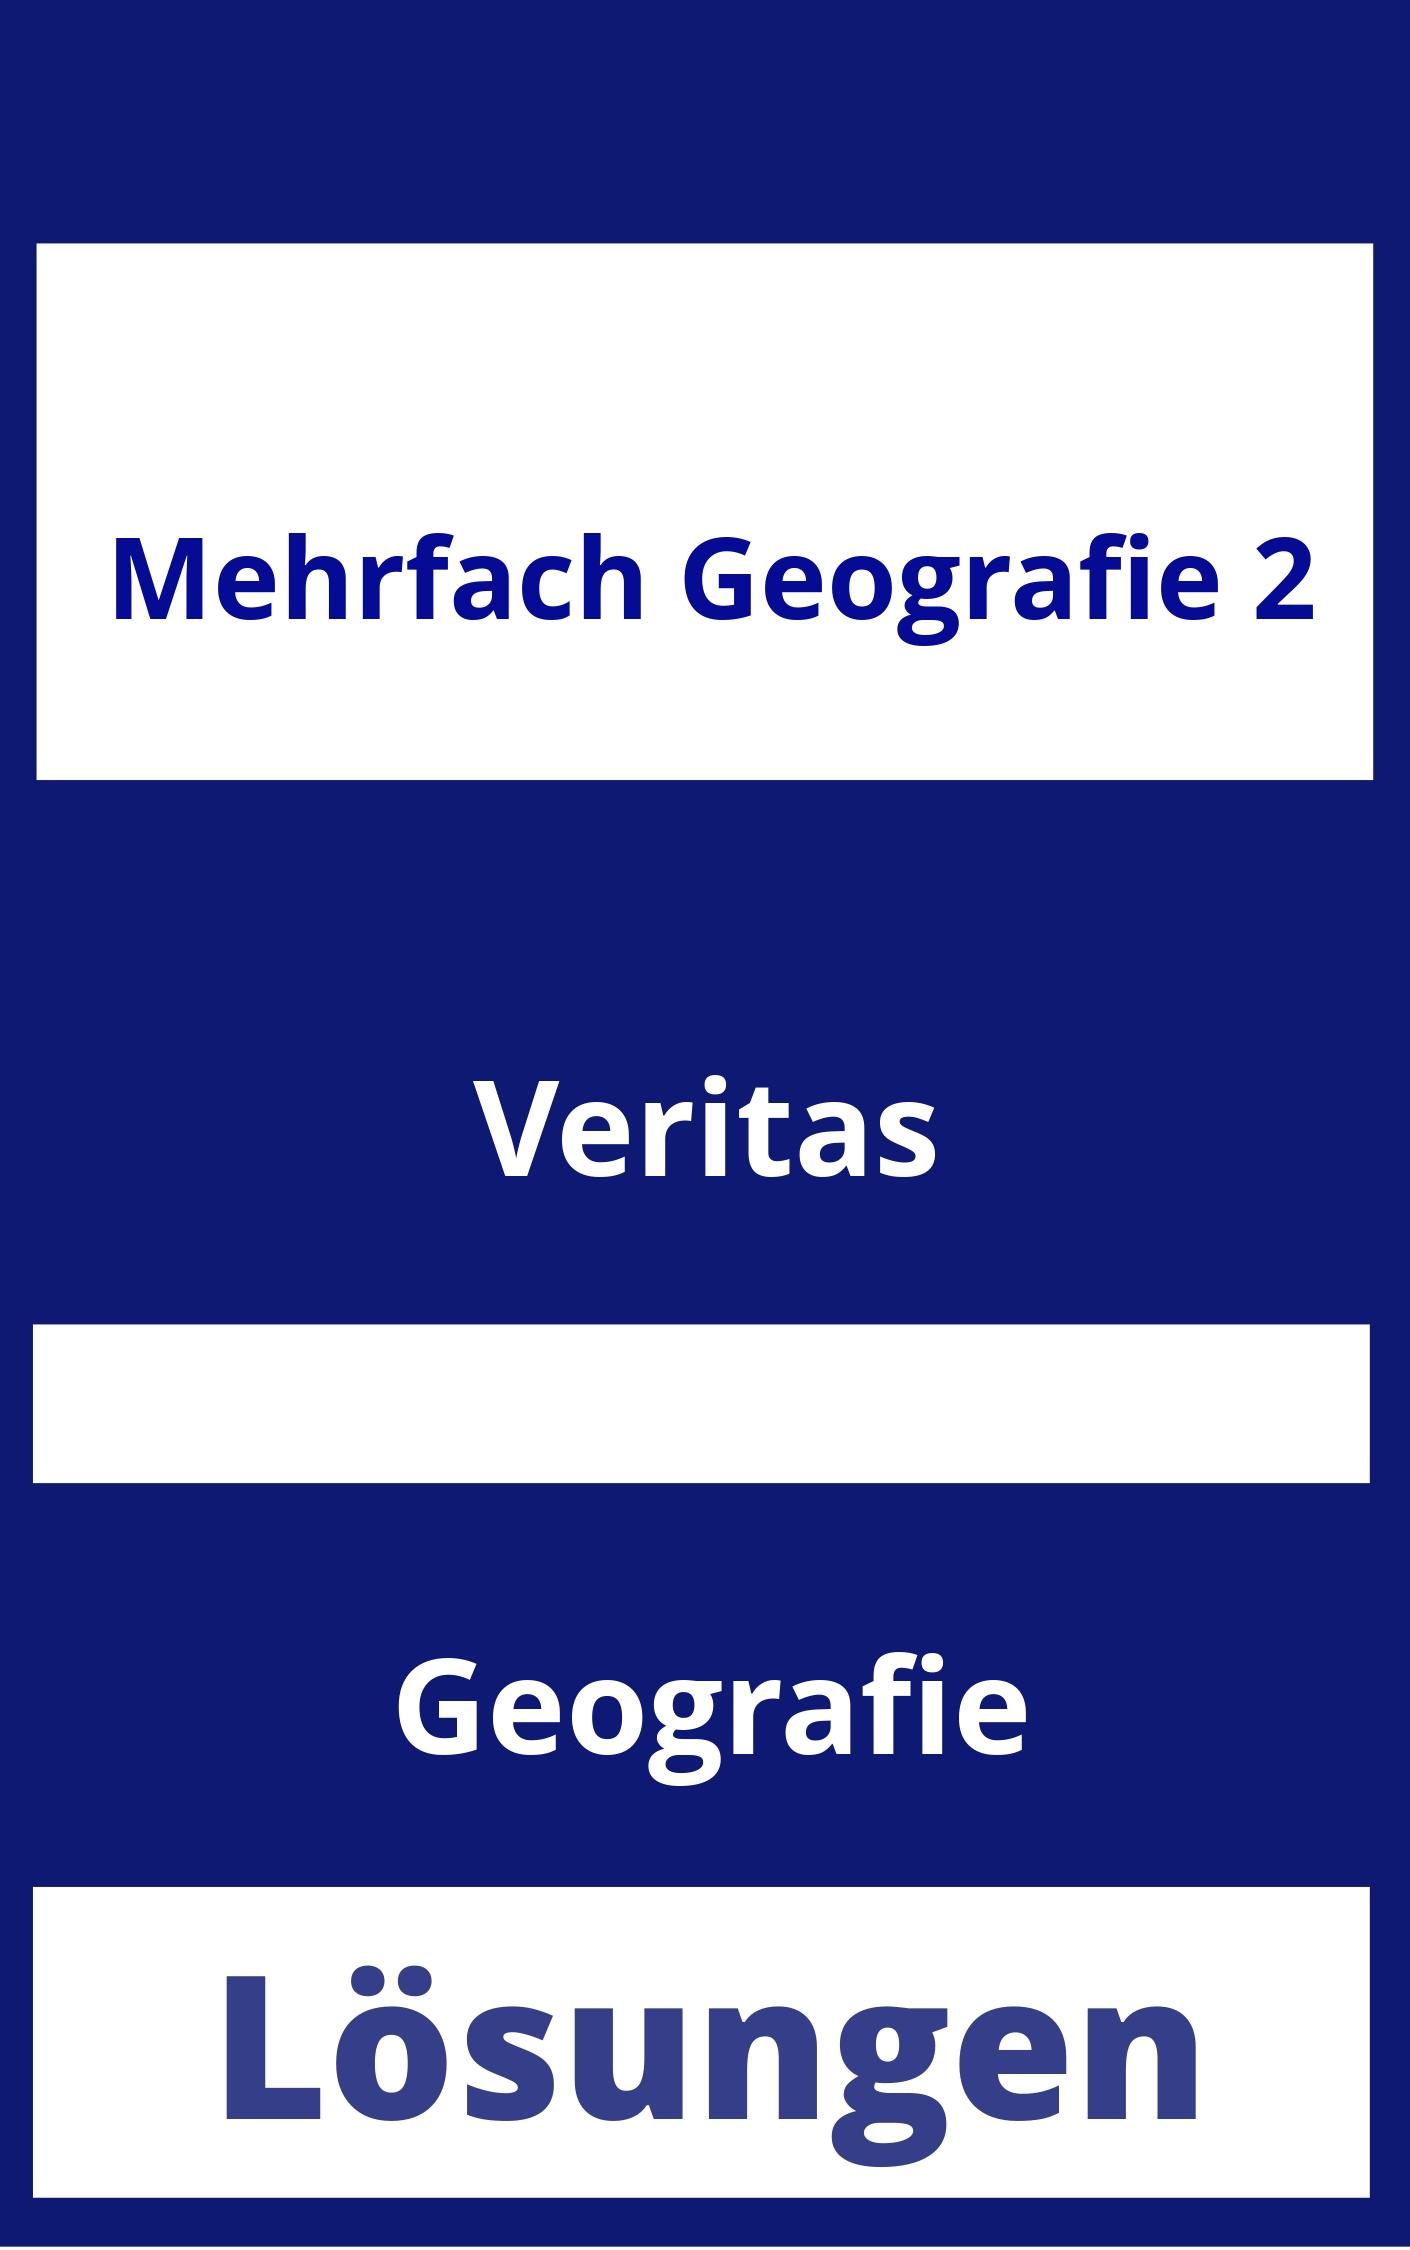 MEHRfach Geografie 2 Lösungen PDF